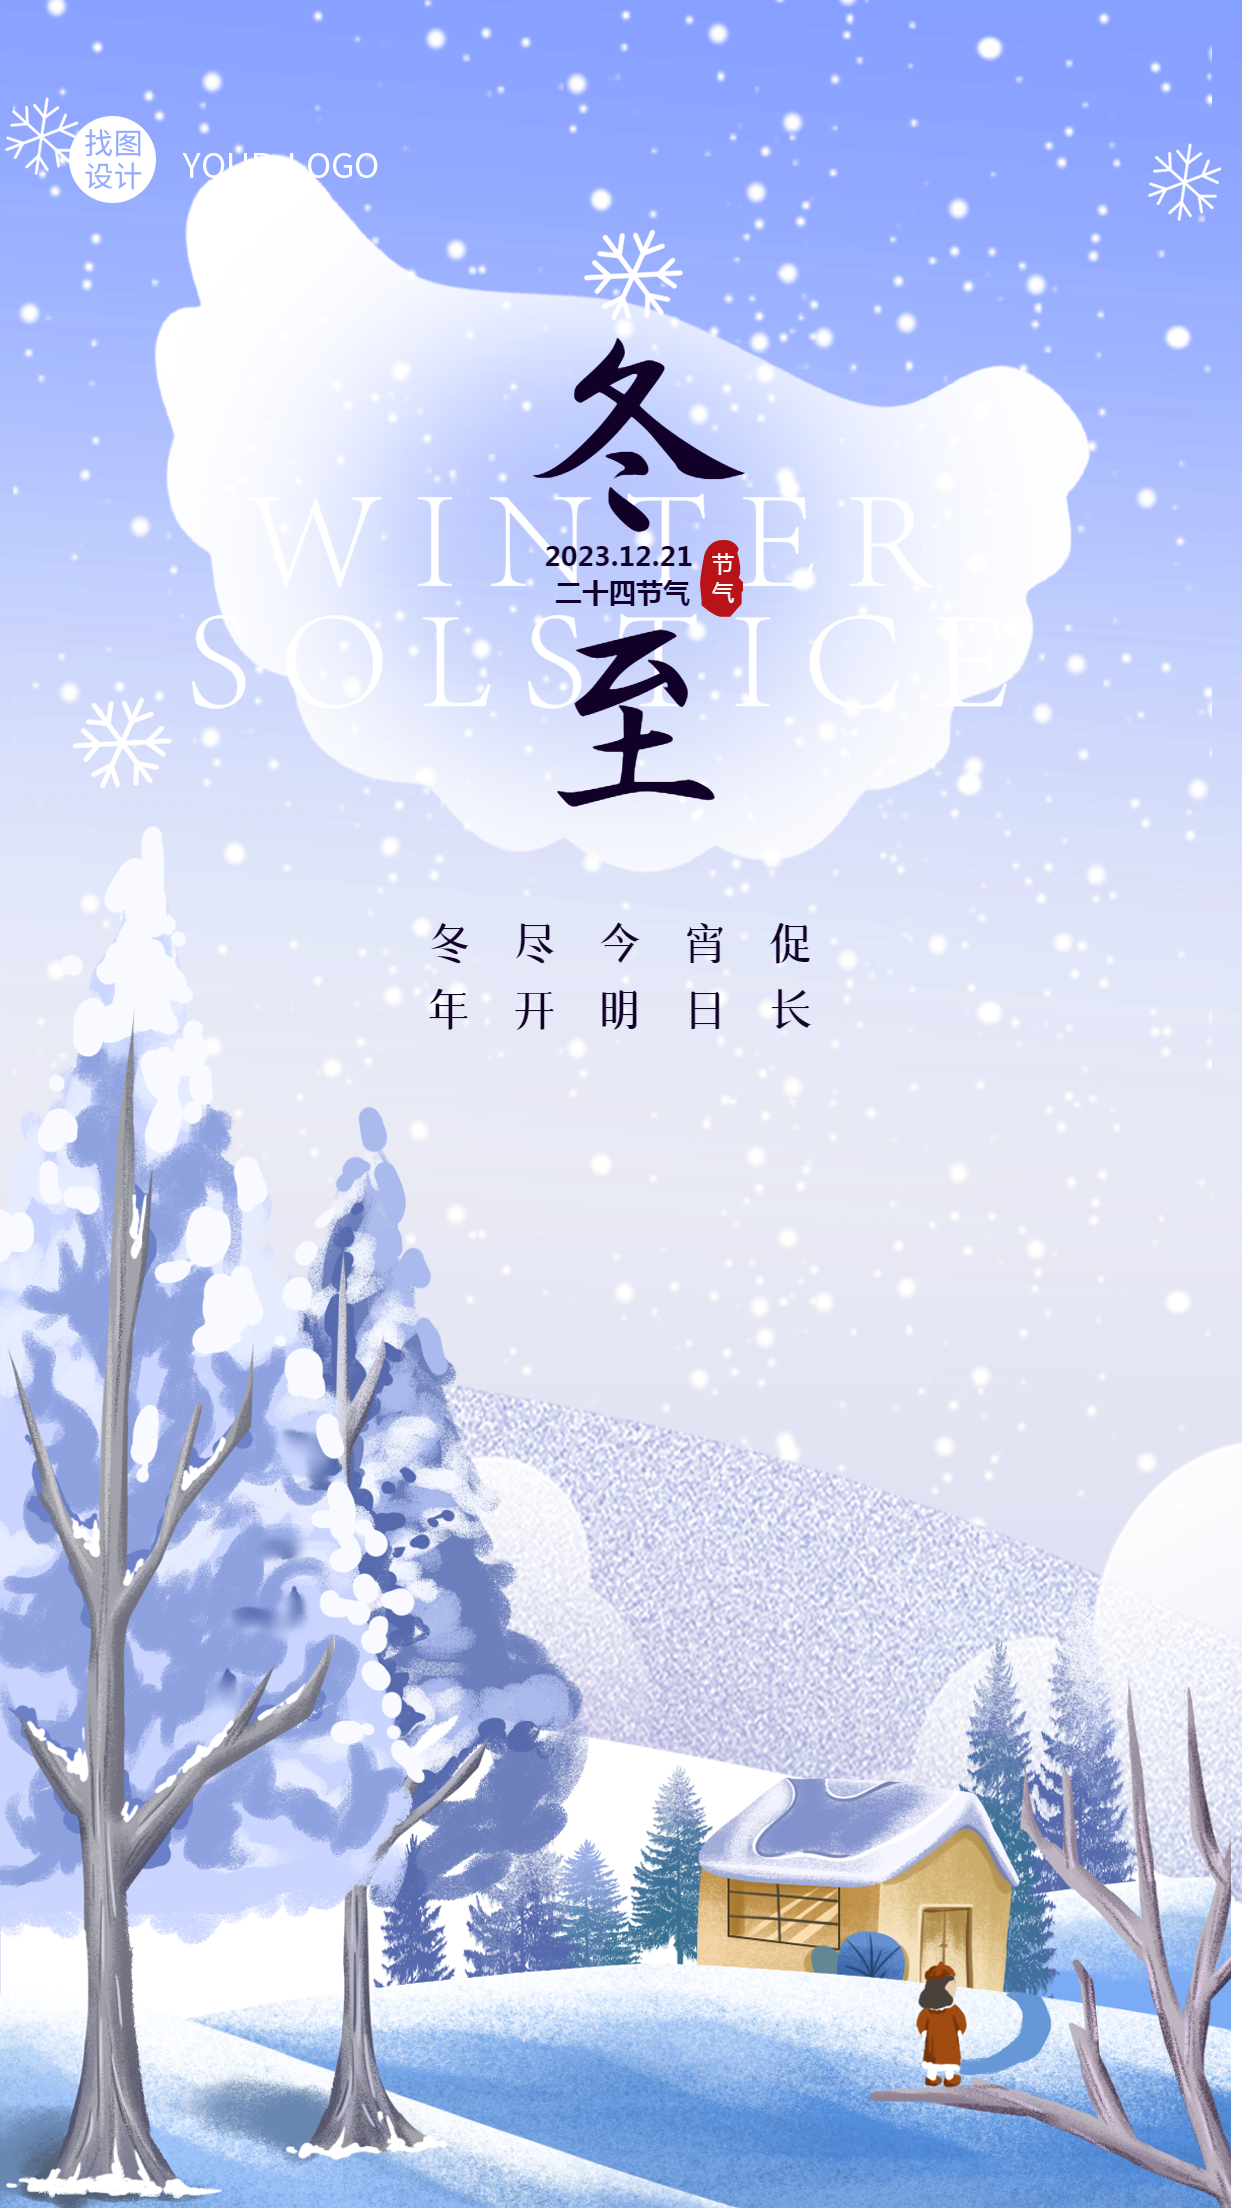 卡通风格雪景冬至节气创意宣传手机海报